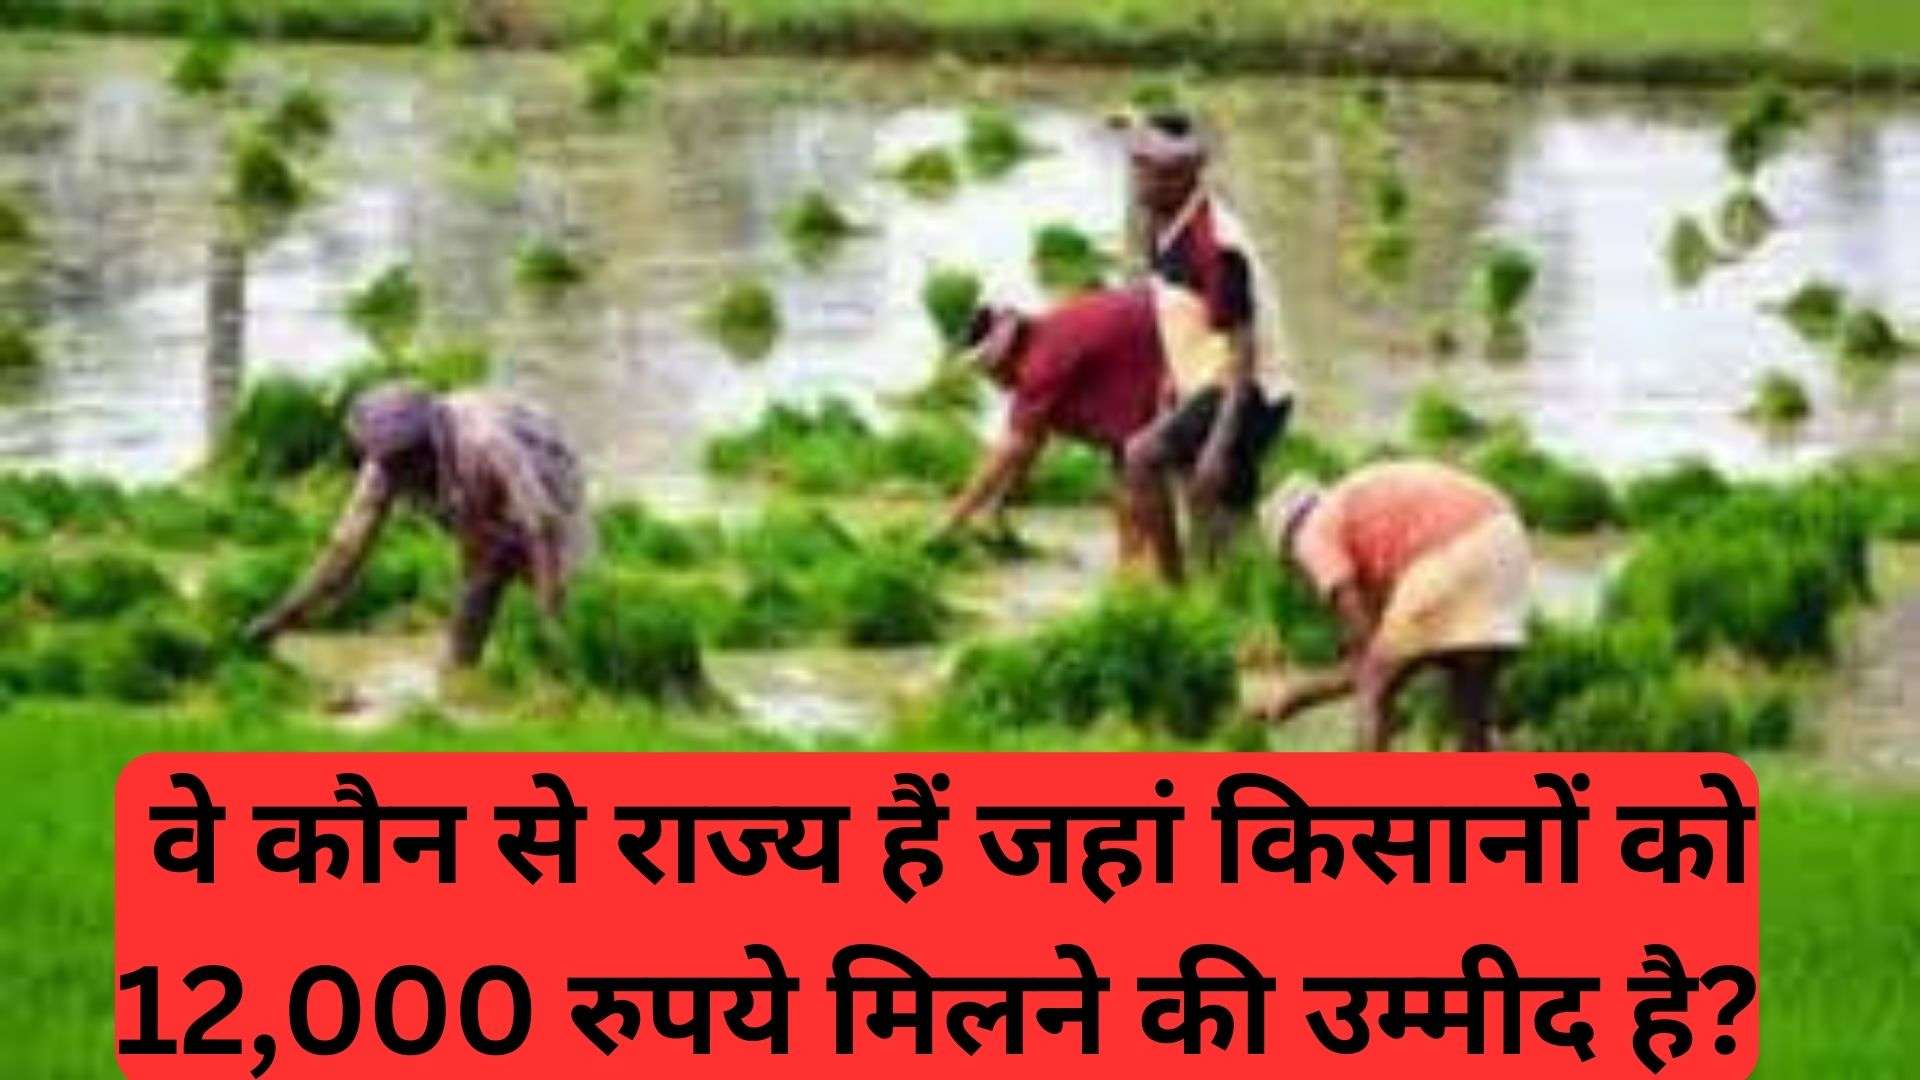 pm kisaan yojana: वे कौन से राज्य हैं जहां किसानों को 12,000 रुपये मिलने की उम्मीद है?